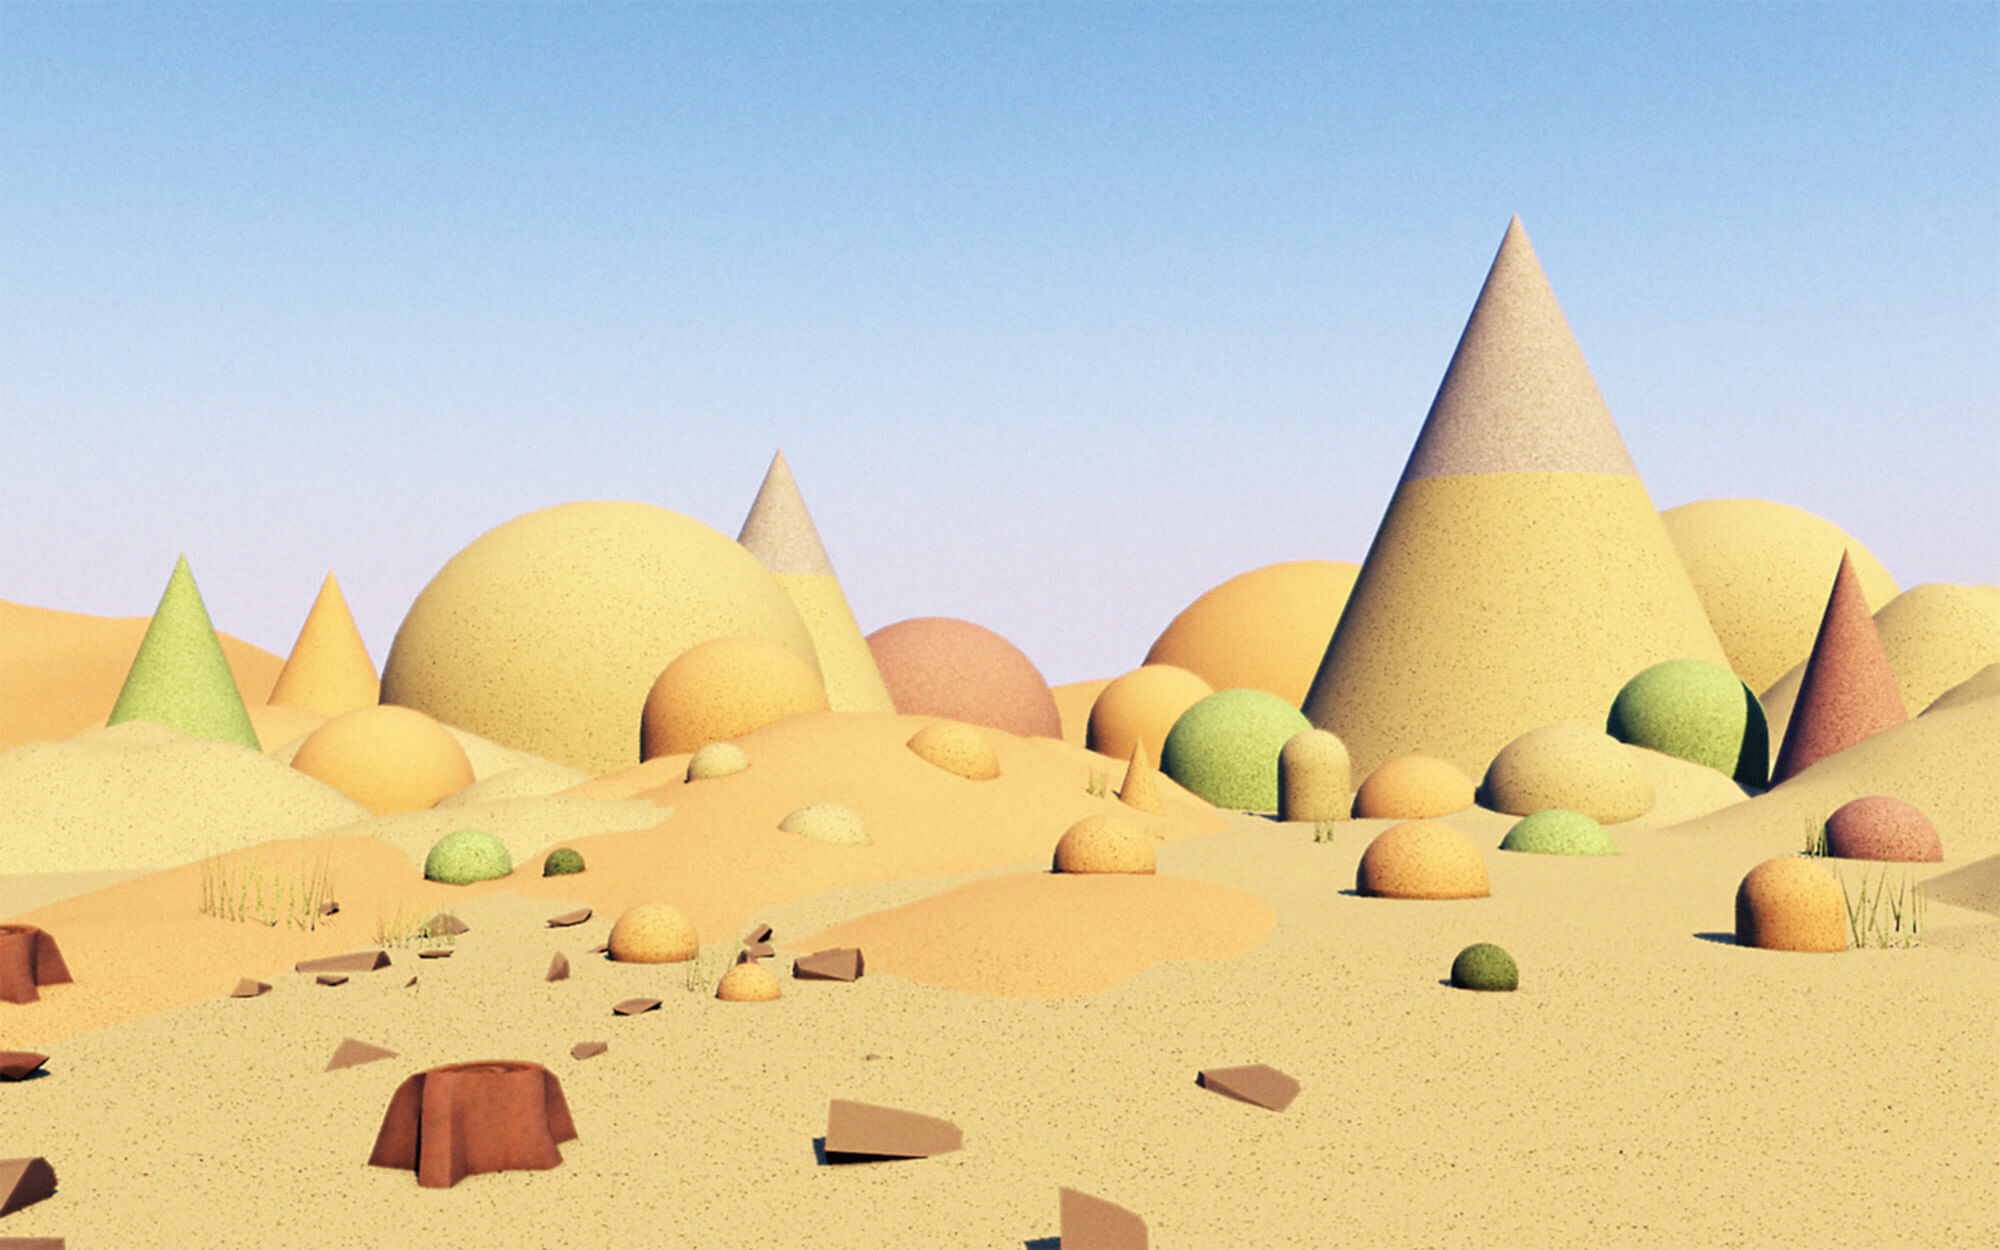 A 3D desert